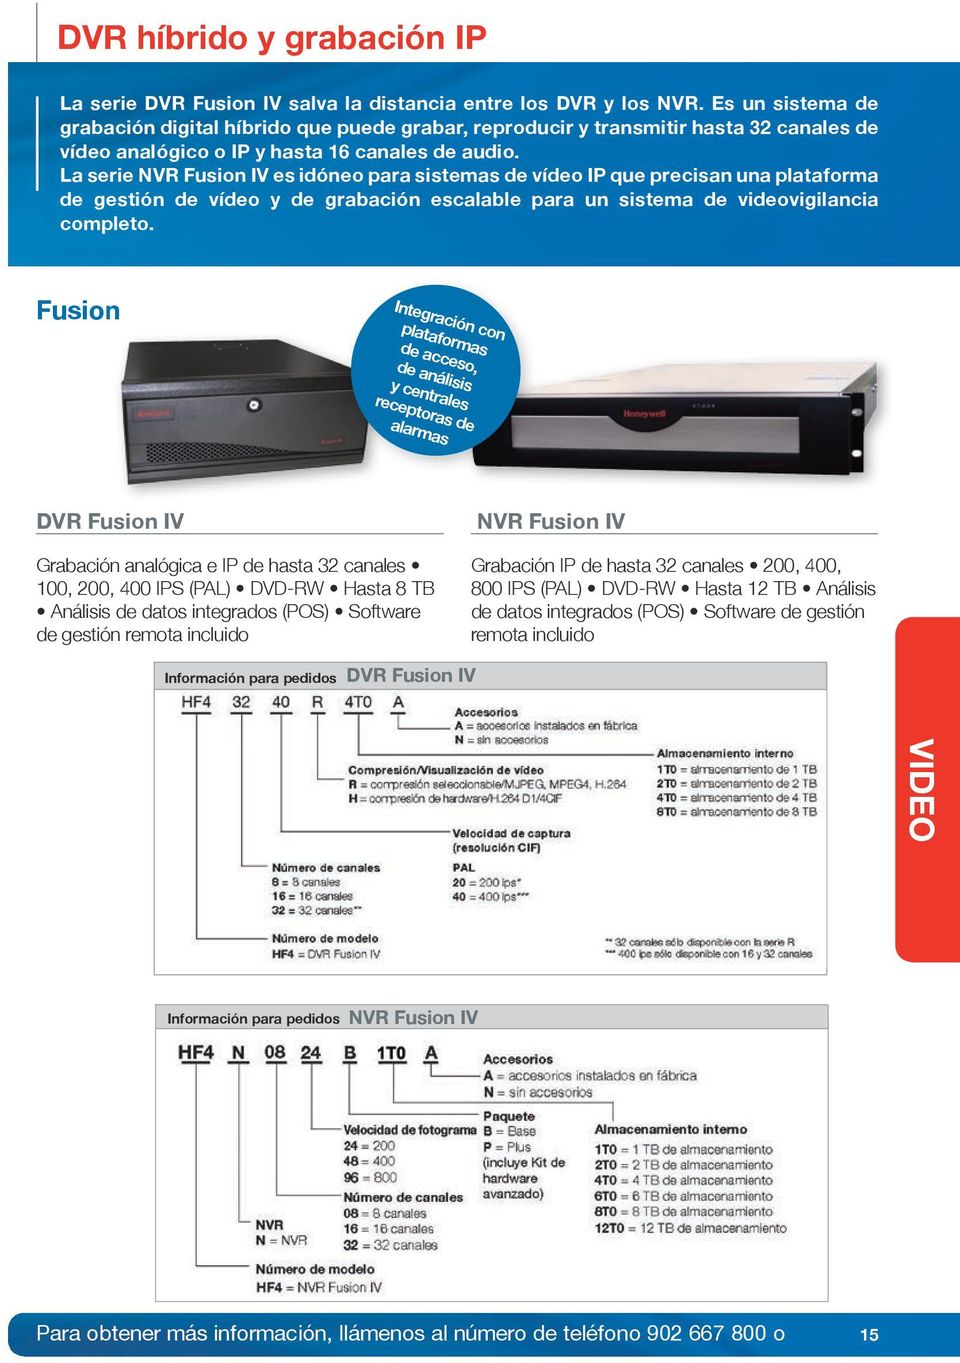 La serie NVR Fusion IV es idóneo para sistemas de vídeo IP que precisan una plataforma de gestión de vídeo y de grabación escalable para un sistema de videovigilancia completo.